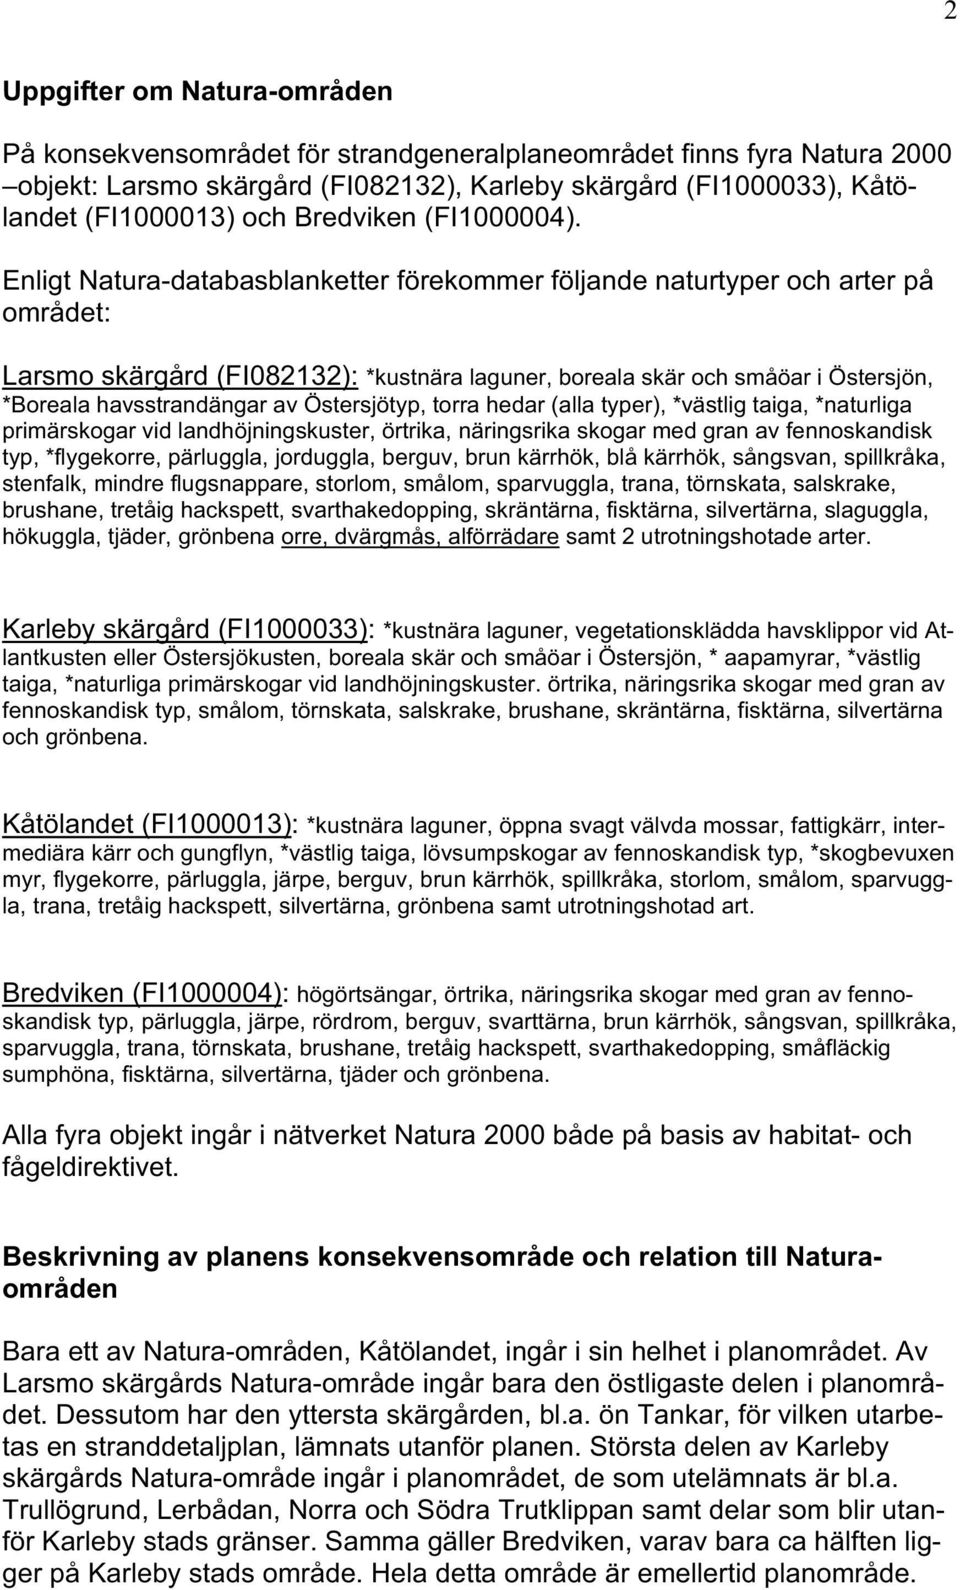 Enligt Natura-databasblanketter förekommer följande naturtyper och arter på området: Larsmo skärgård (FI082132): *kustnära laguner, boreala skär och småöar i Östersjön, *Boreala havsstrandängar av